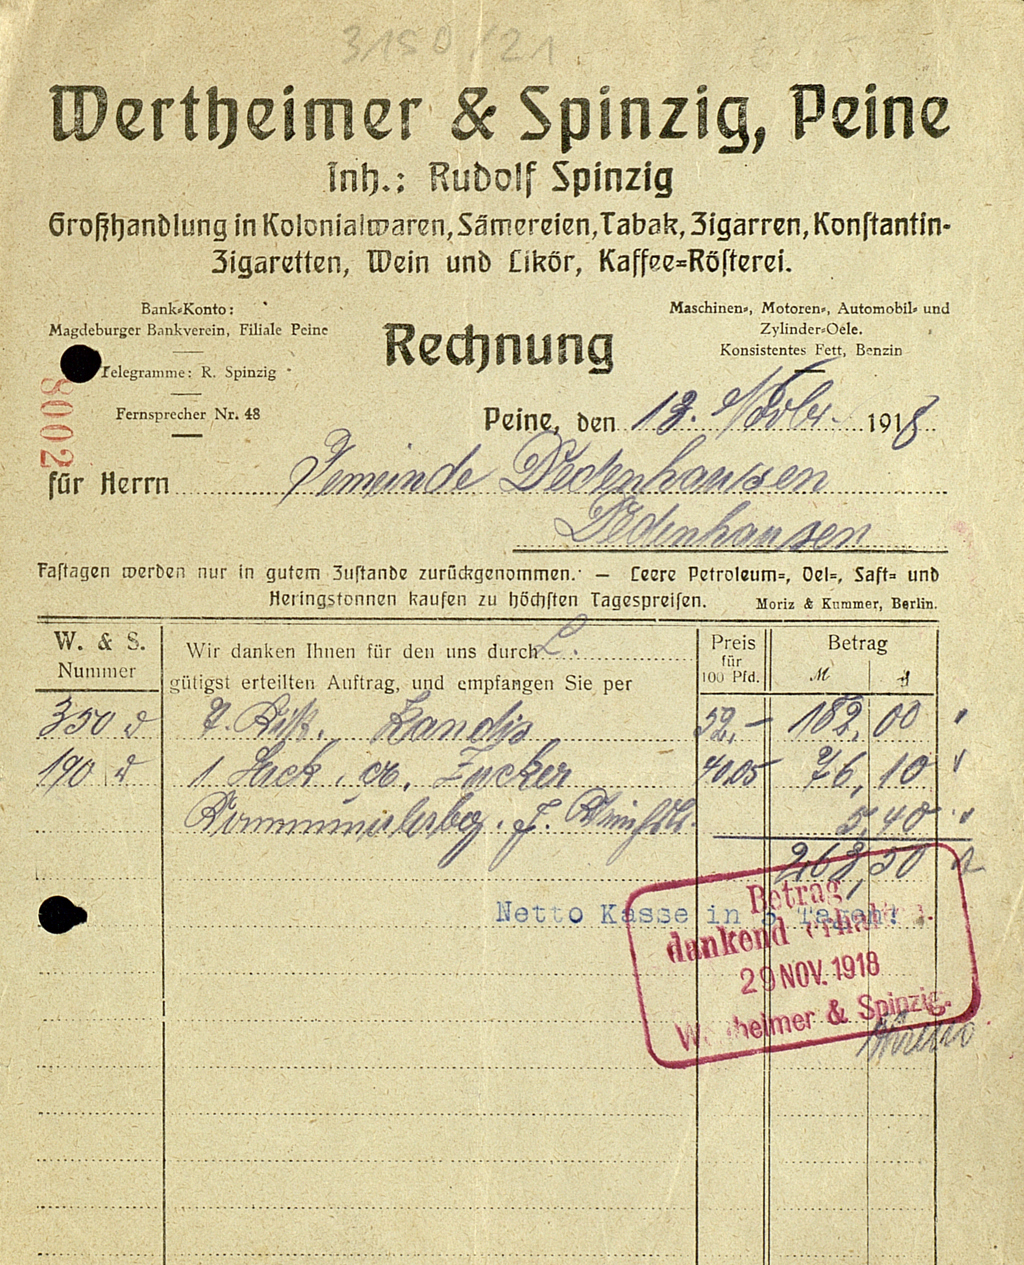 Zu sehen ist eine Rechnung der Firma Wertheimer & Spinzig an die Gemeinde Dedenheusen. Berechnet wurden eine Kiste Kandis, ein Sack Zucker und die Anfallenden Transportkosten. Die Rechnung stammt aus dem Jahre 1918.  